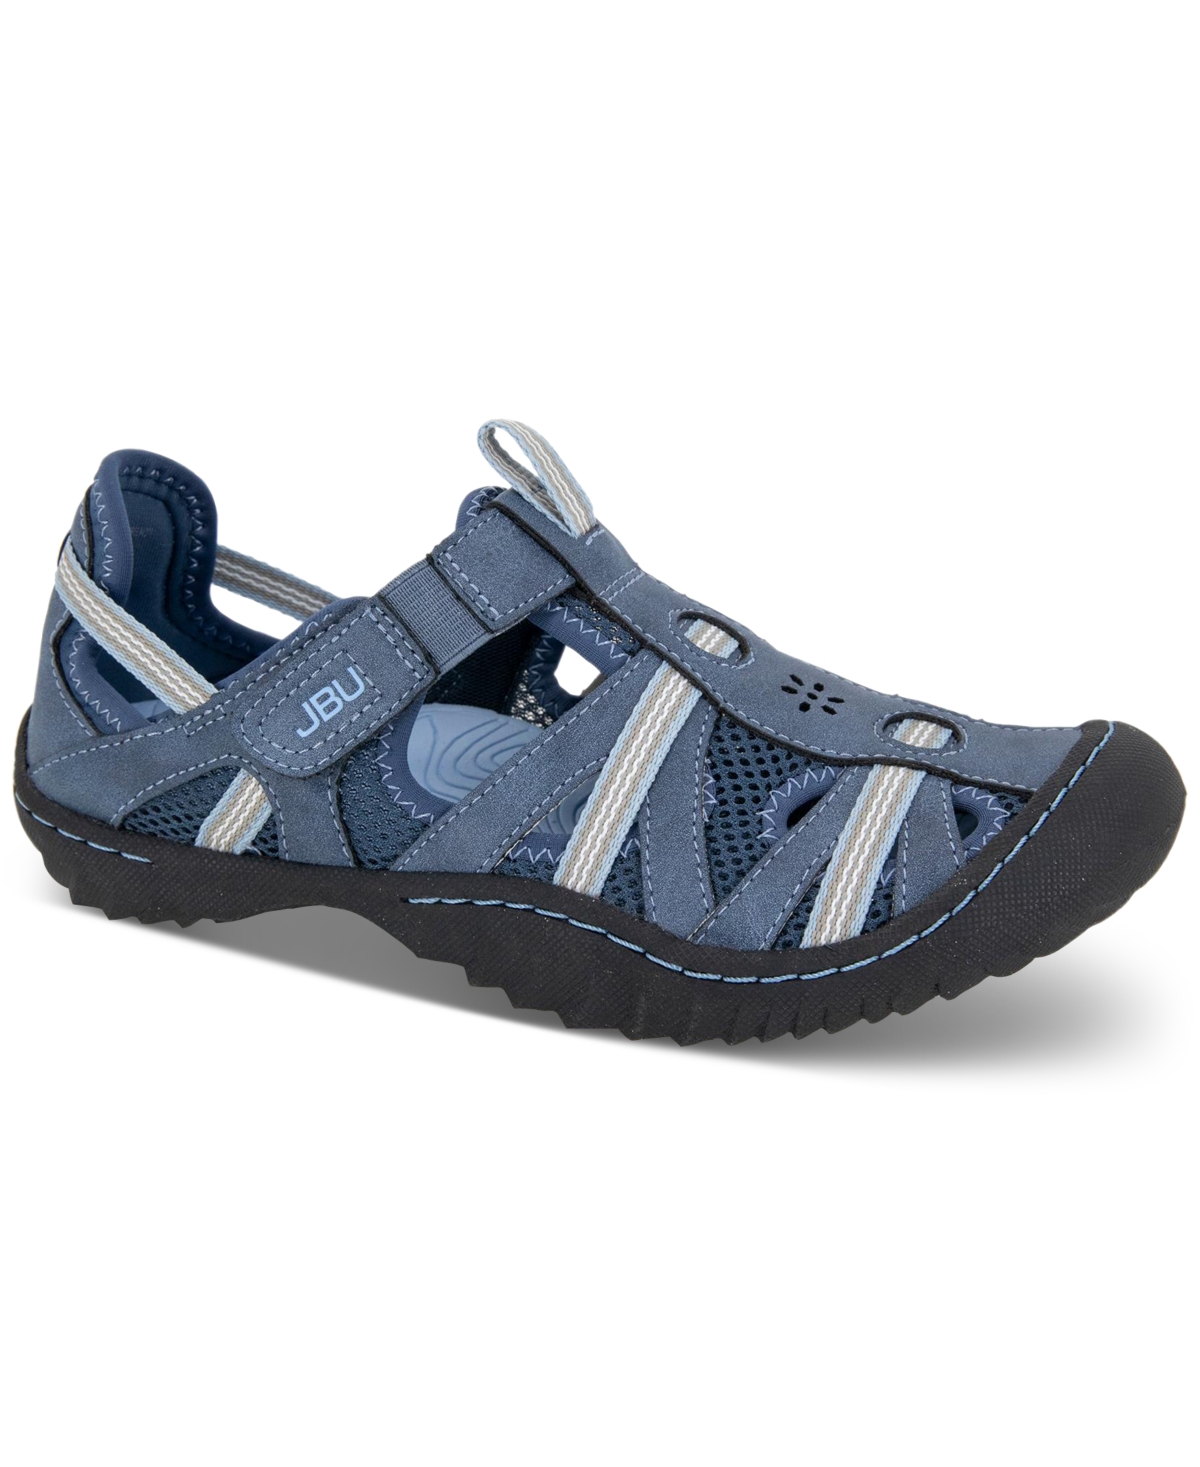 Jbu Women's Regional Water-ready Strappy Sandal Flats Women's Shoes In Dk. Denim/stone Blue